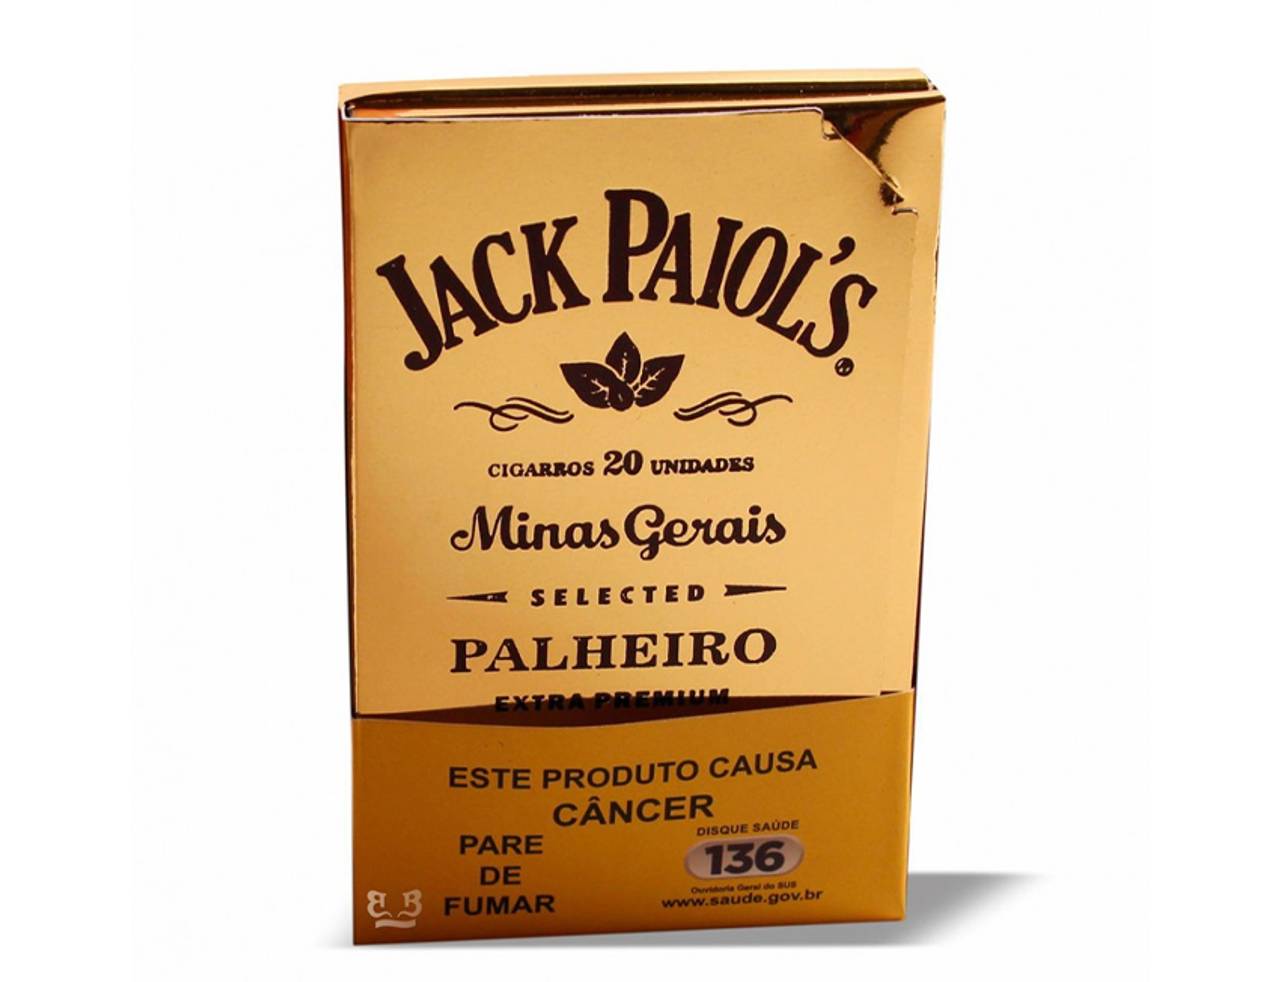 Palheiro Jack Paiol's Extra Premium caixinha marrom